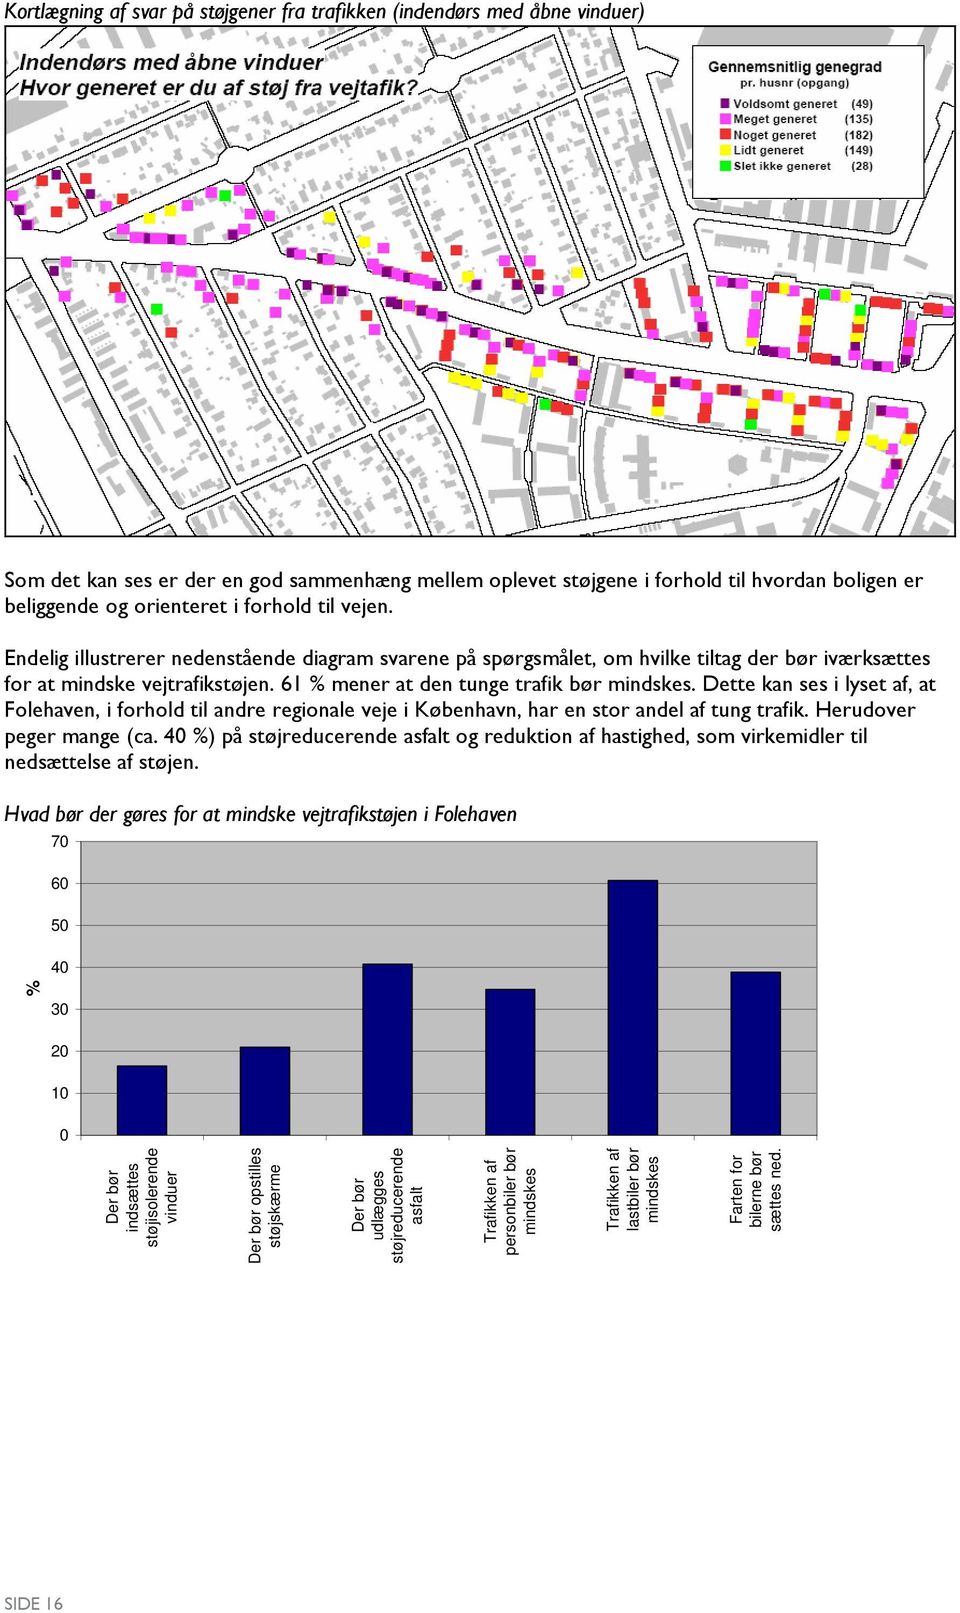 Dette kan ses i lyset af, at Folehaven, i forhold til andre regionale veje i København, har en stor andel af tung trafik. Herudover peger mange (ca.